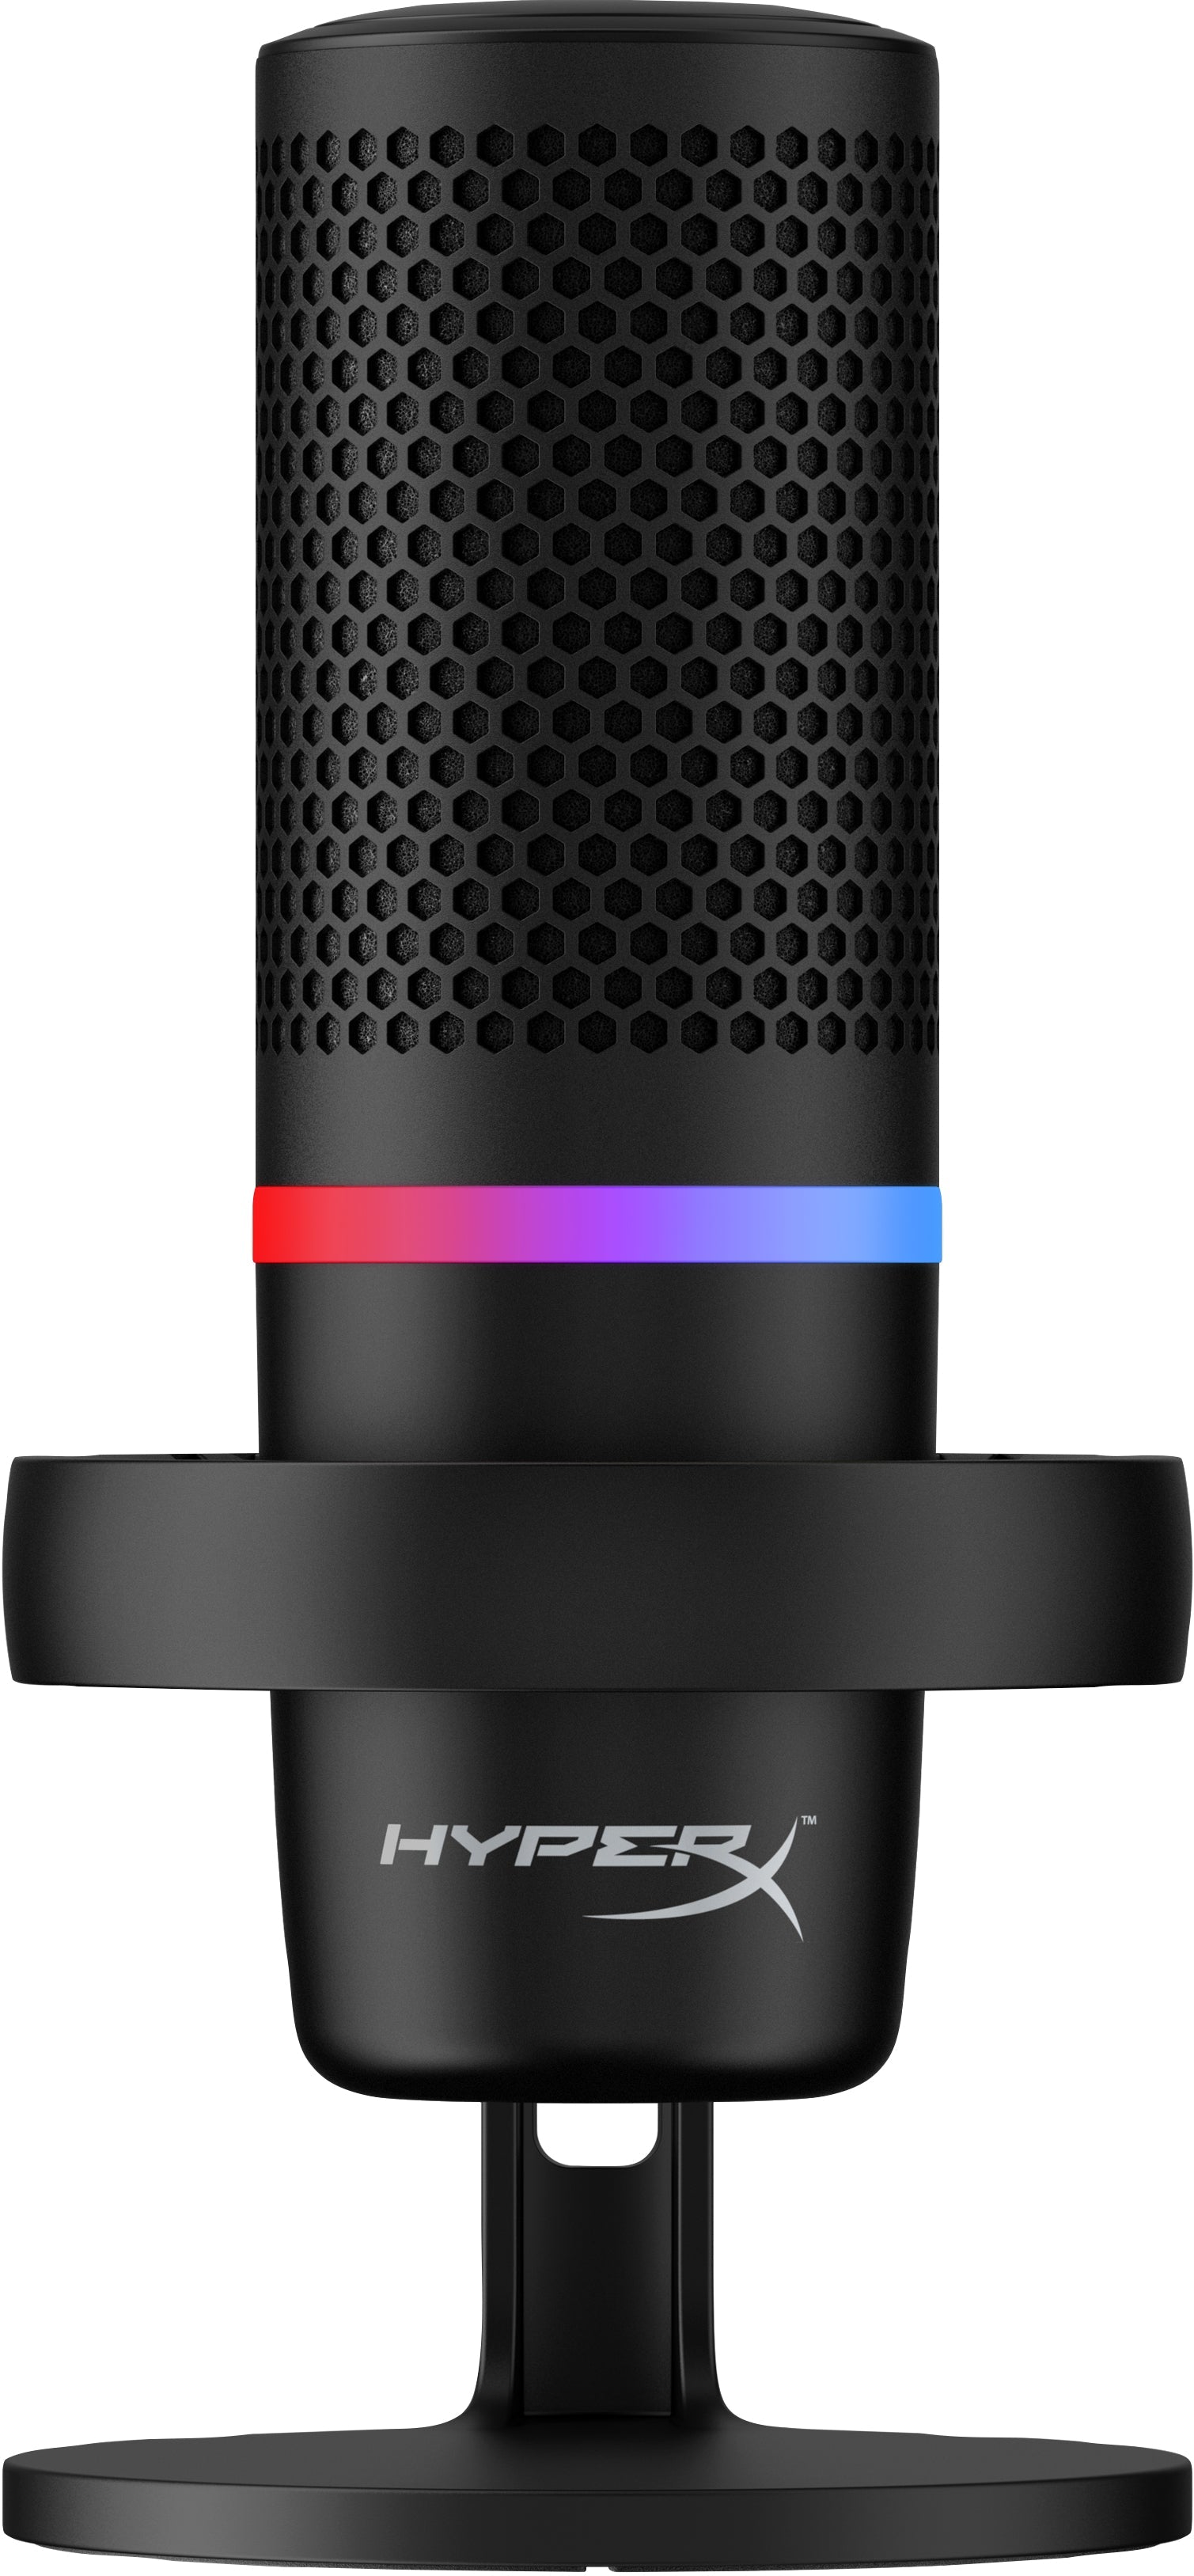 HyperX DuoCast USB-kondensatormikrofon